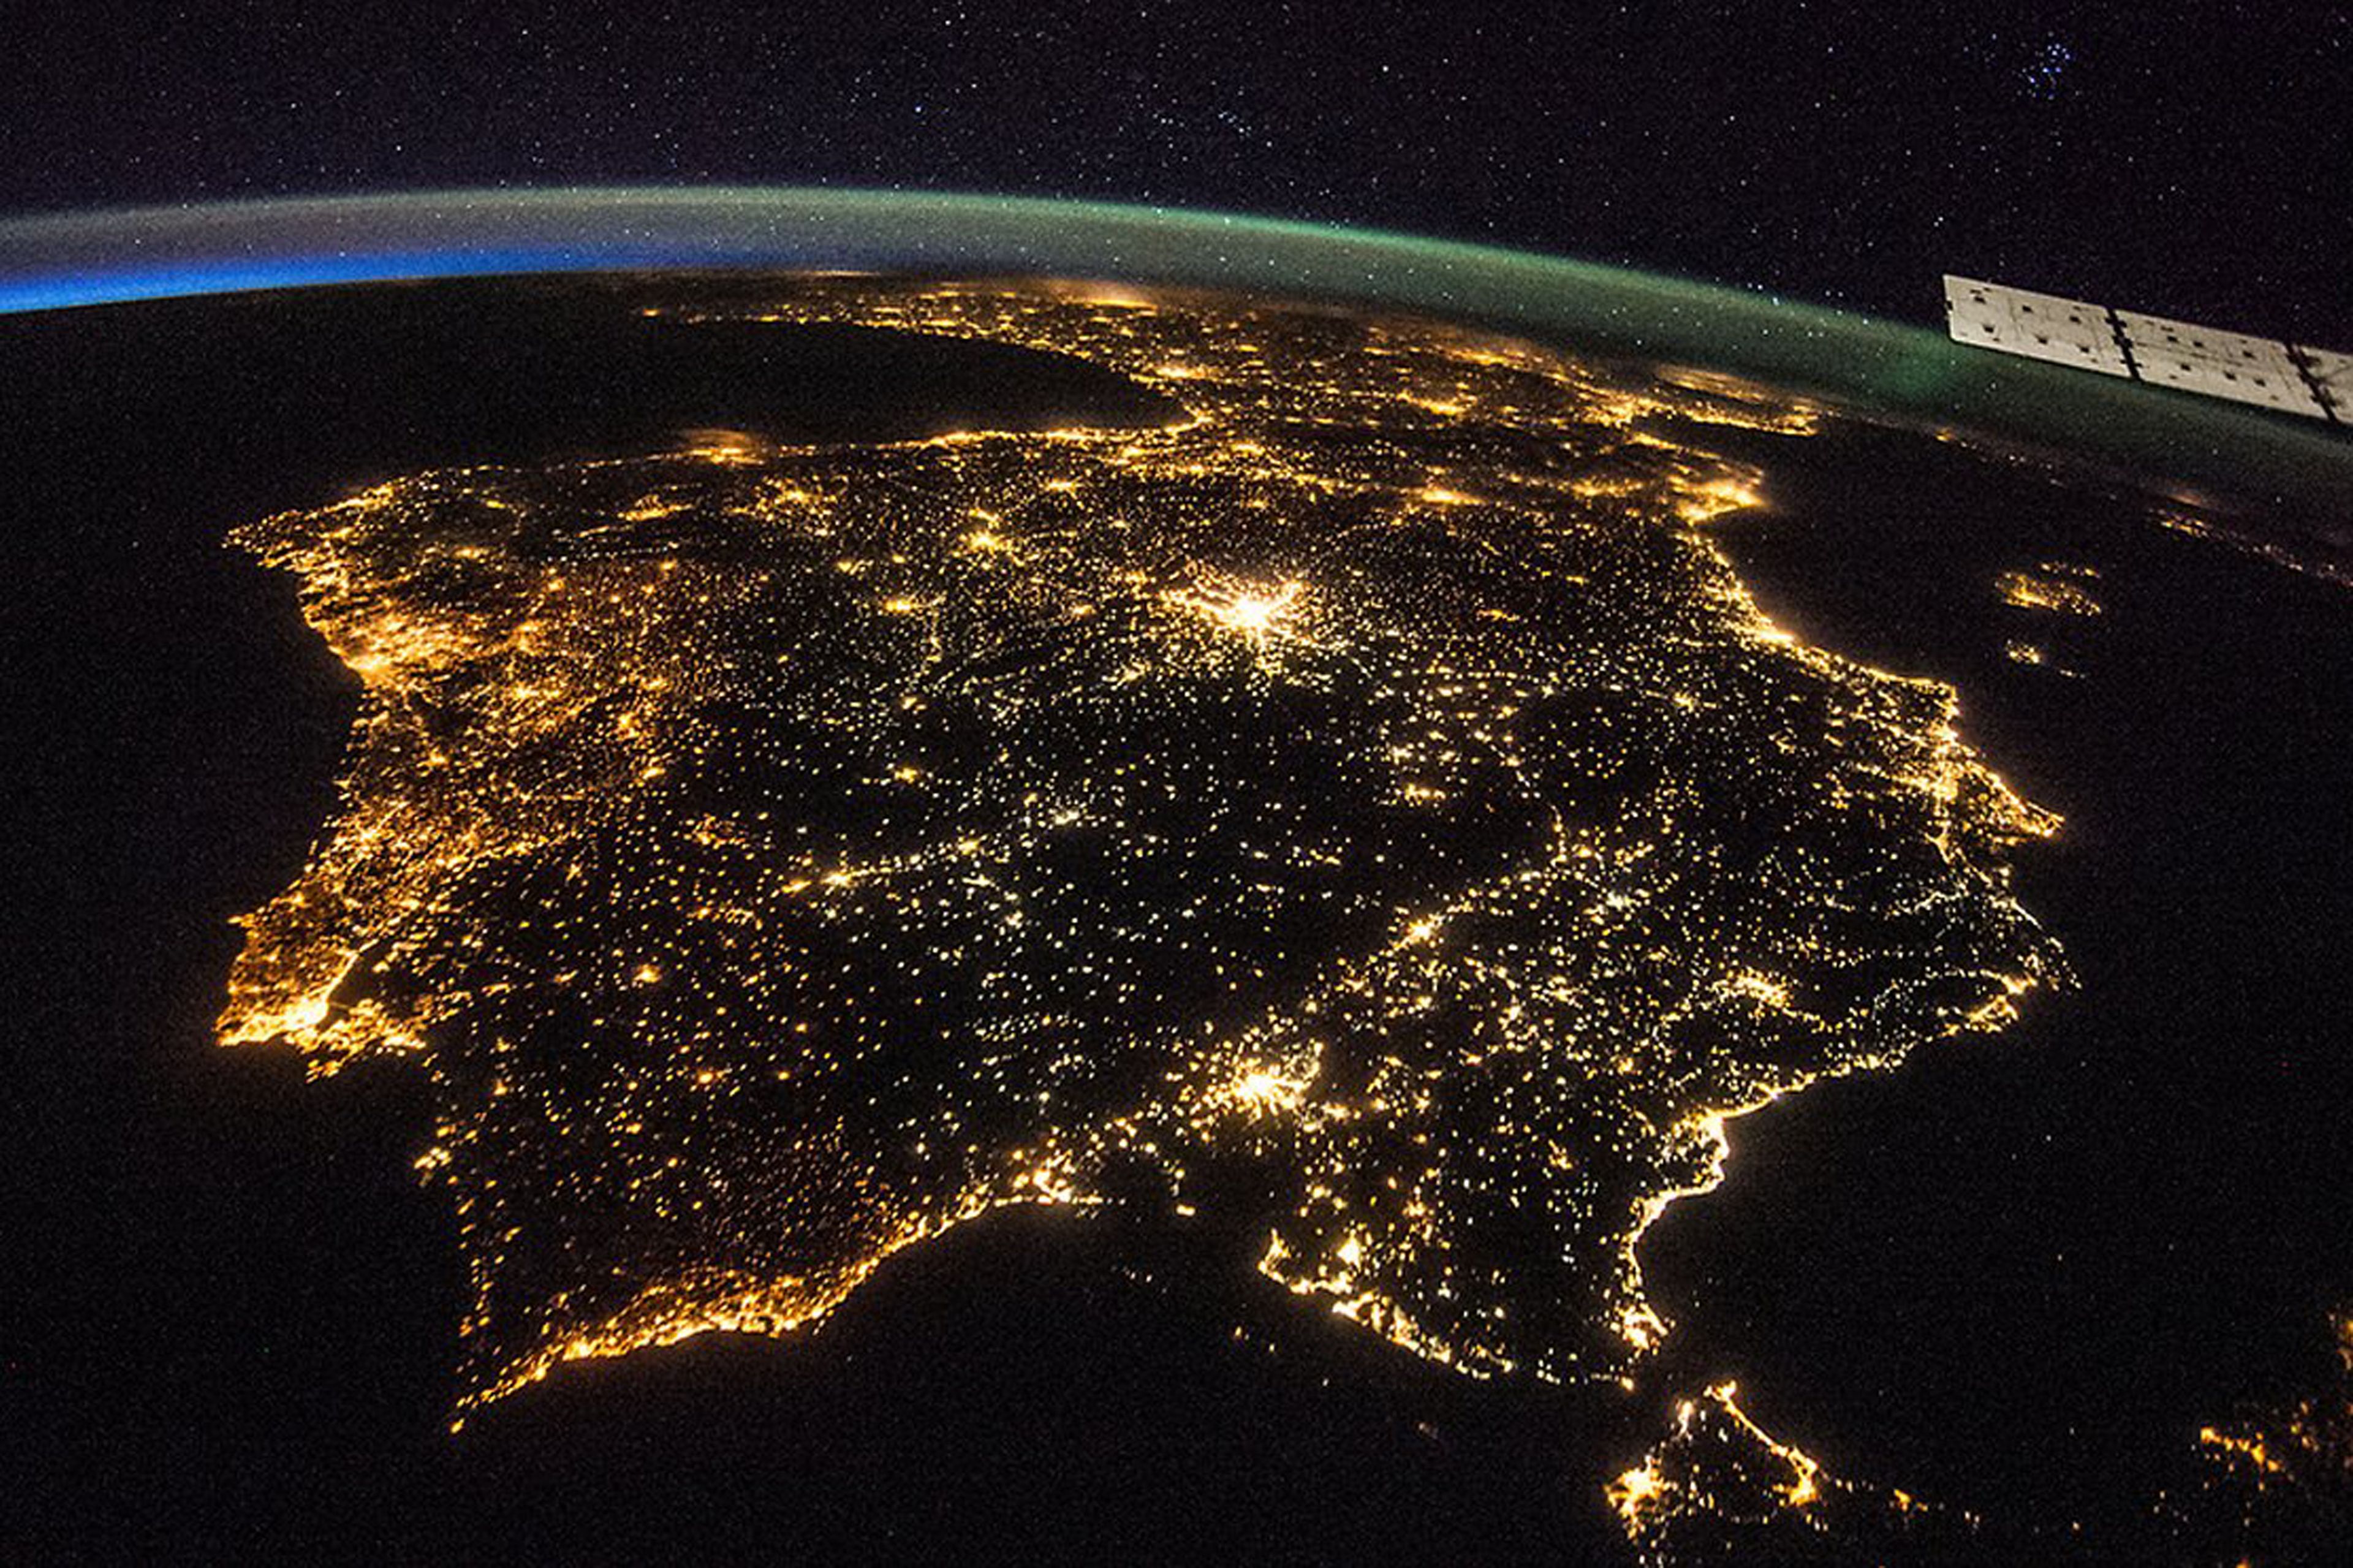 Imagen tomada desde la Estación Espacial Internacional de la Península Ibérica.